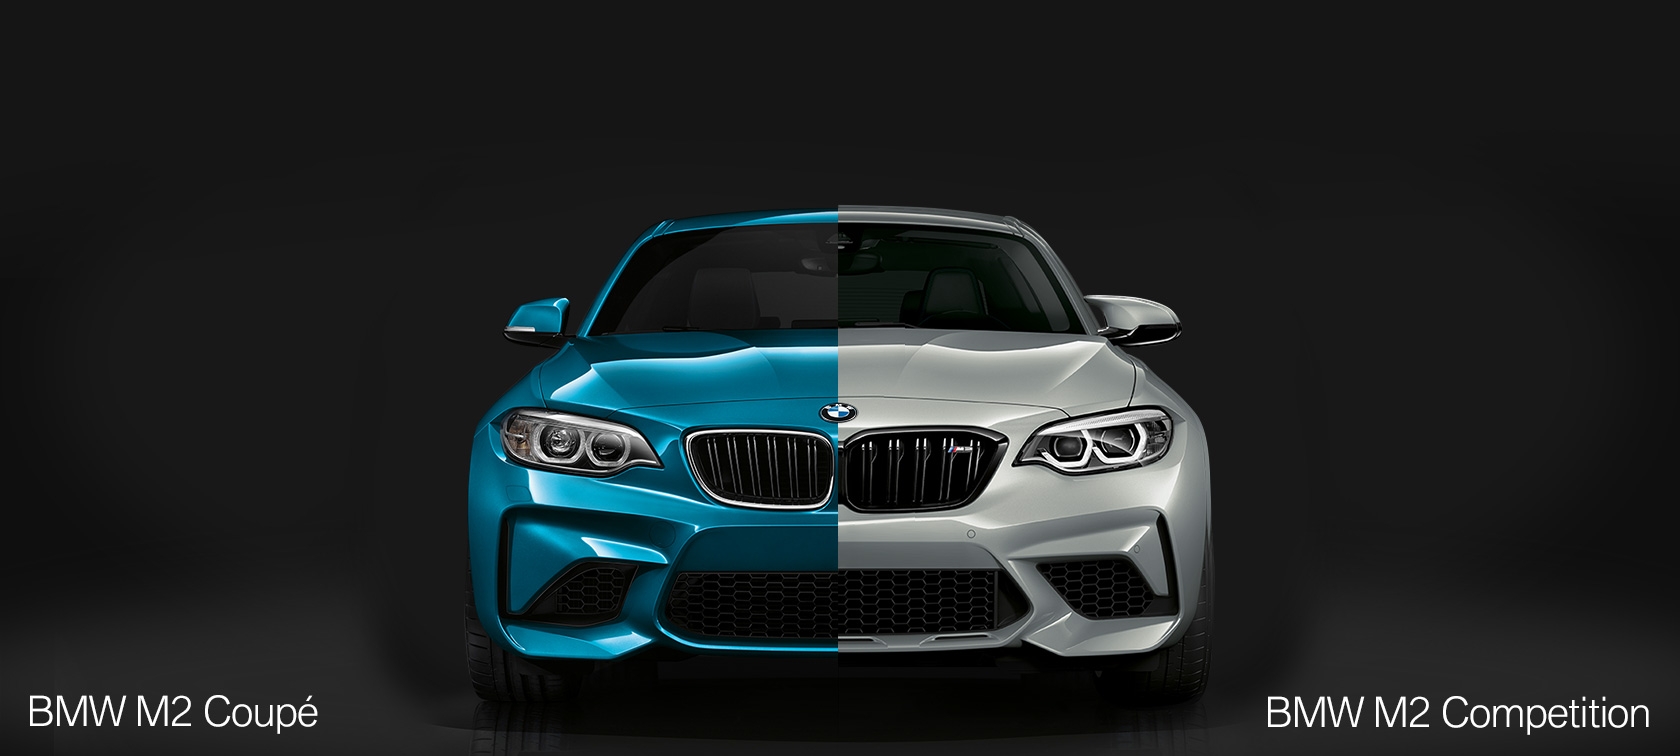 وقتی ب ام و برای پورشه رقیب می تراشید؛ مشخصات کامل BMW M2 Competition